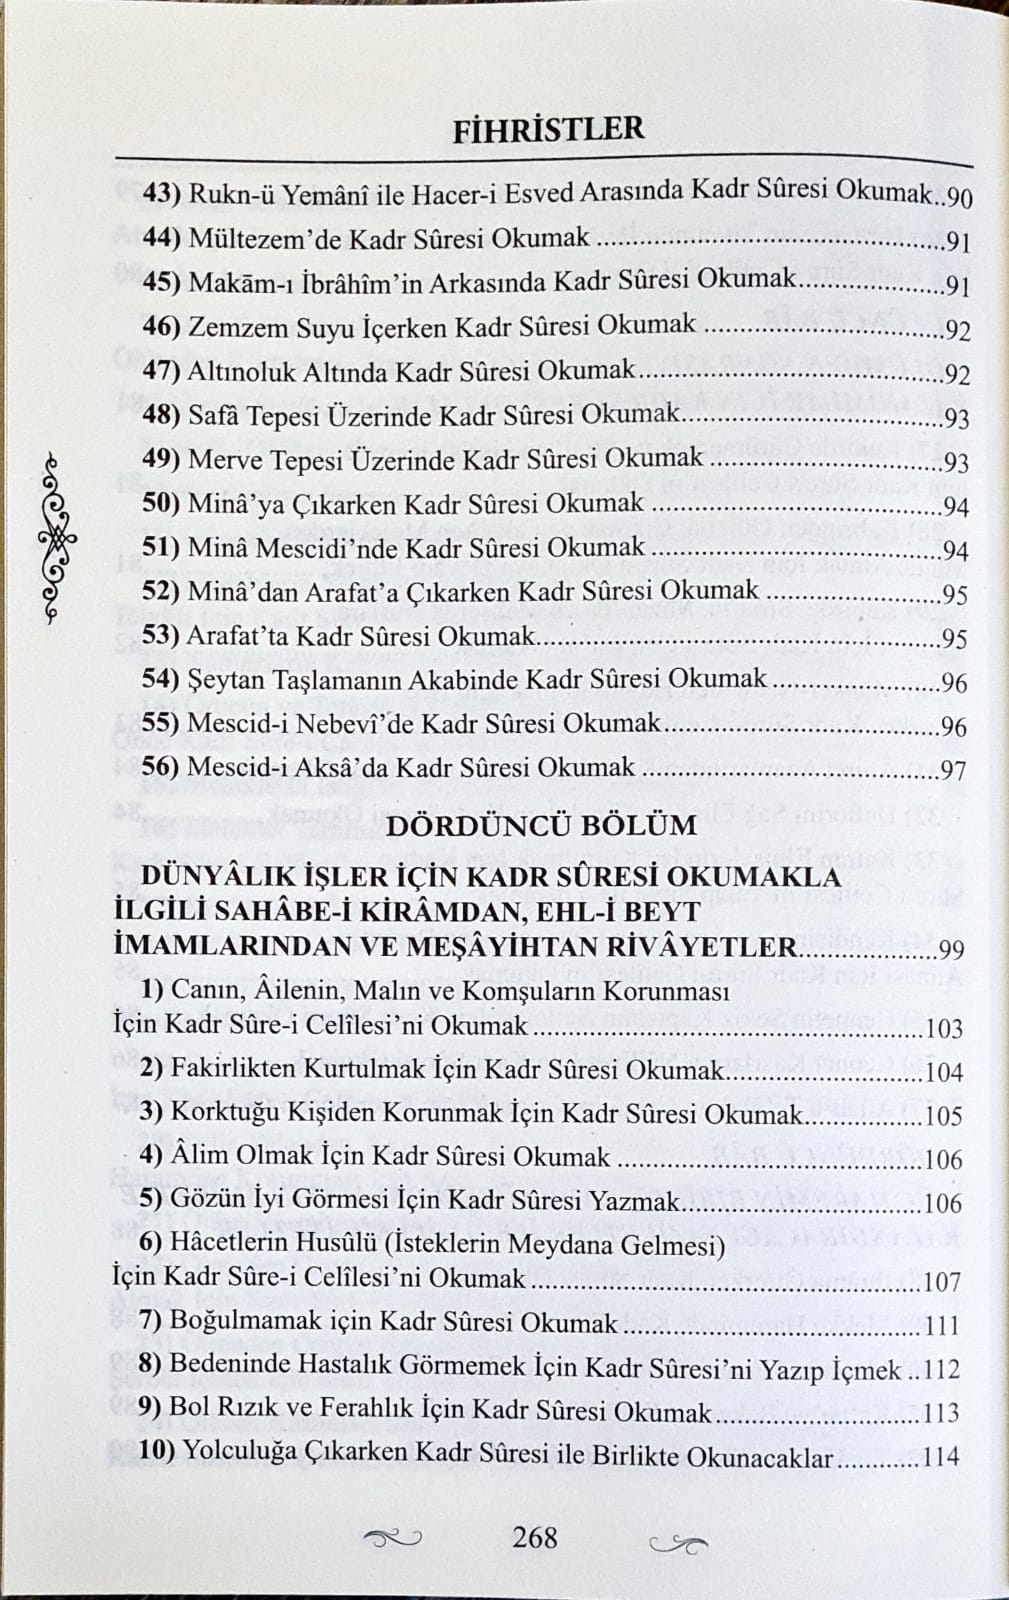 Kadir Suresinin Faziletleri Kitabı  - Cübbeli Ahmet Hoca ( 91. Risale )